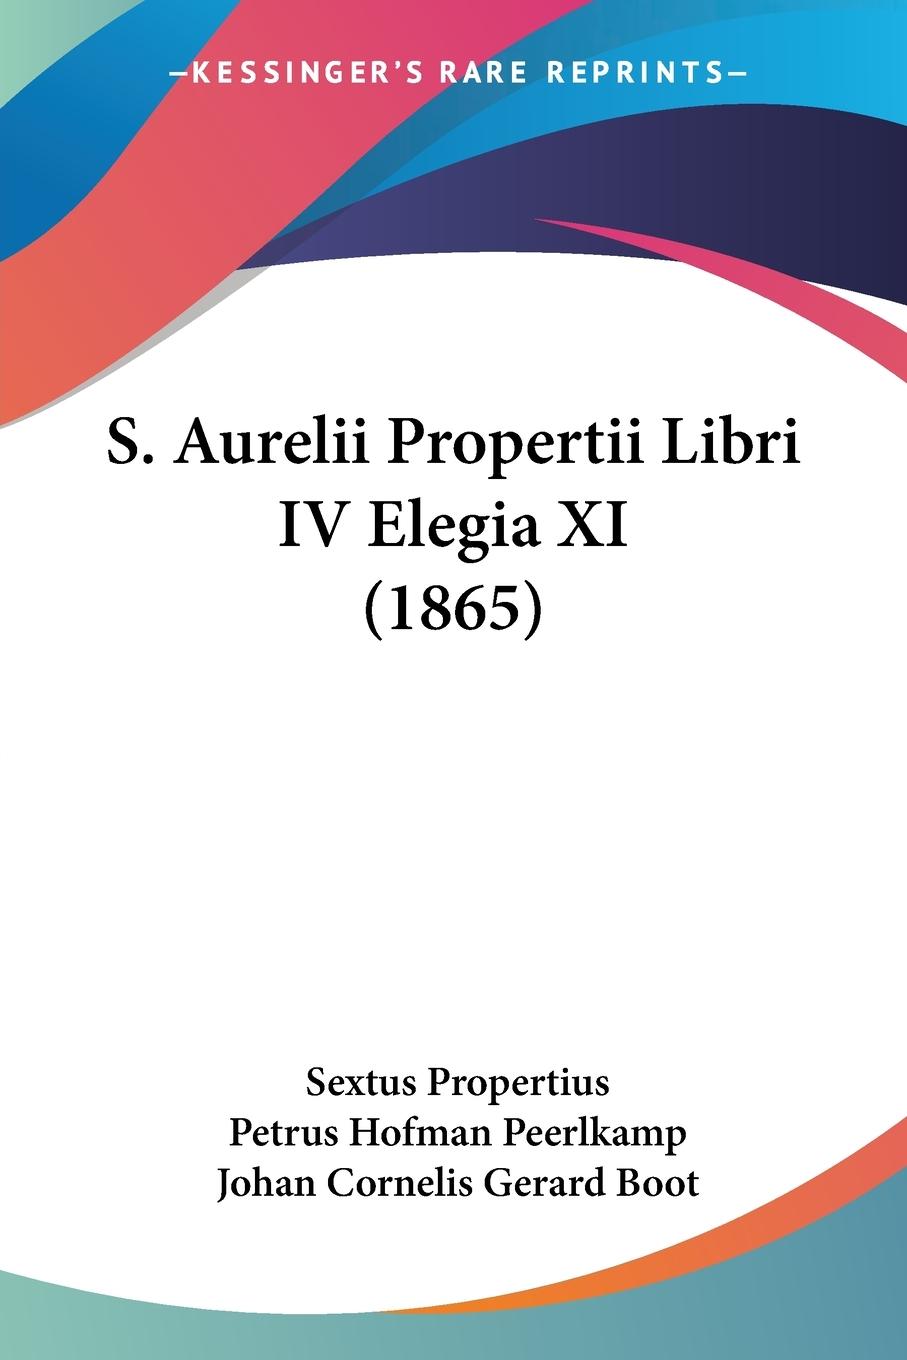 S. Aurelii Propertii Libri IV Elegia XI (1865) - Propertius, Sextus